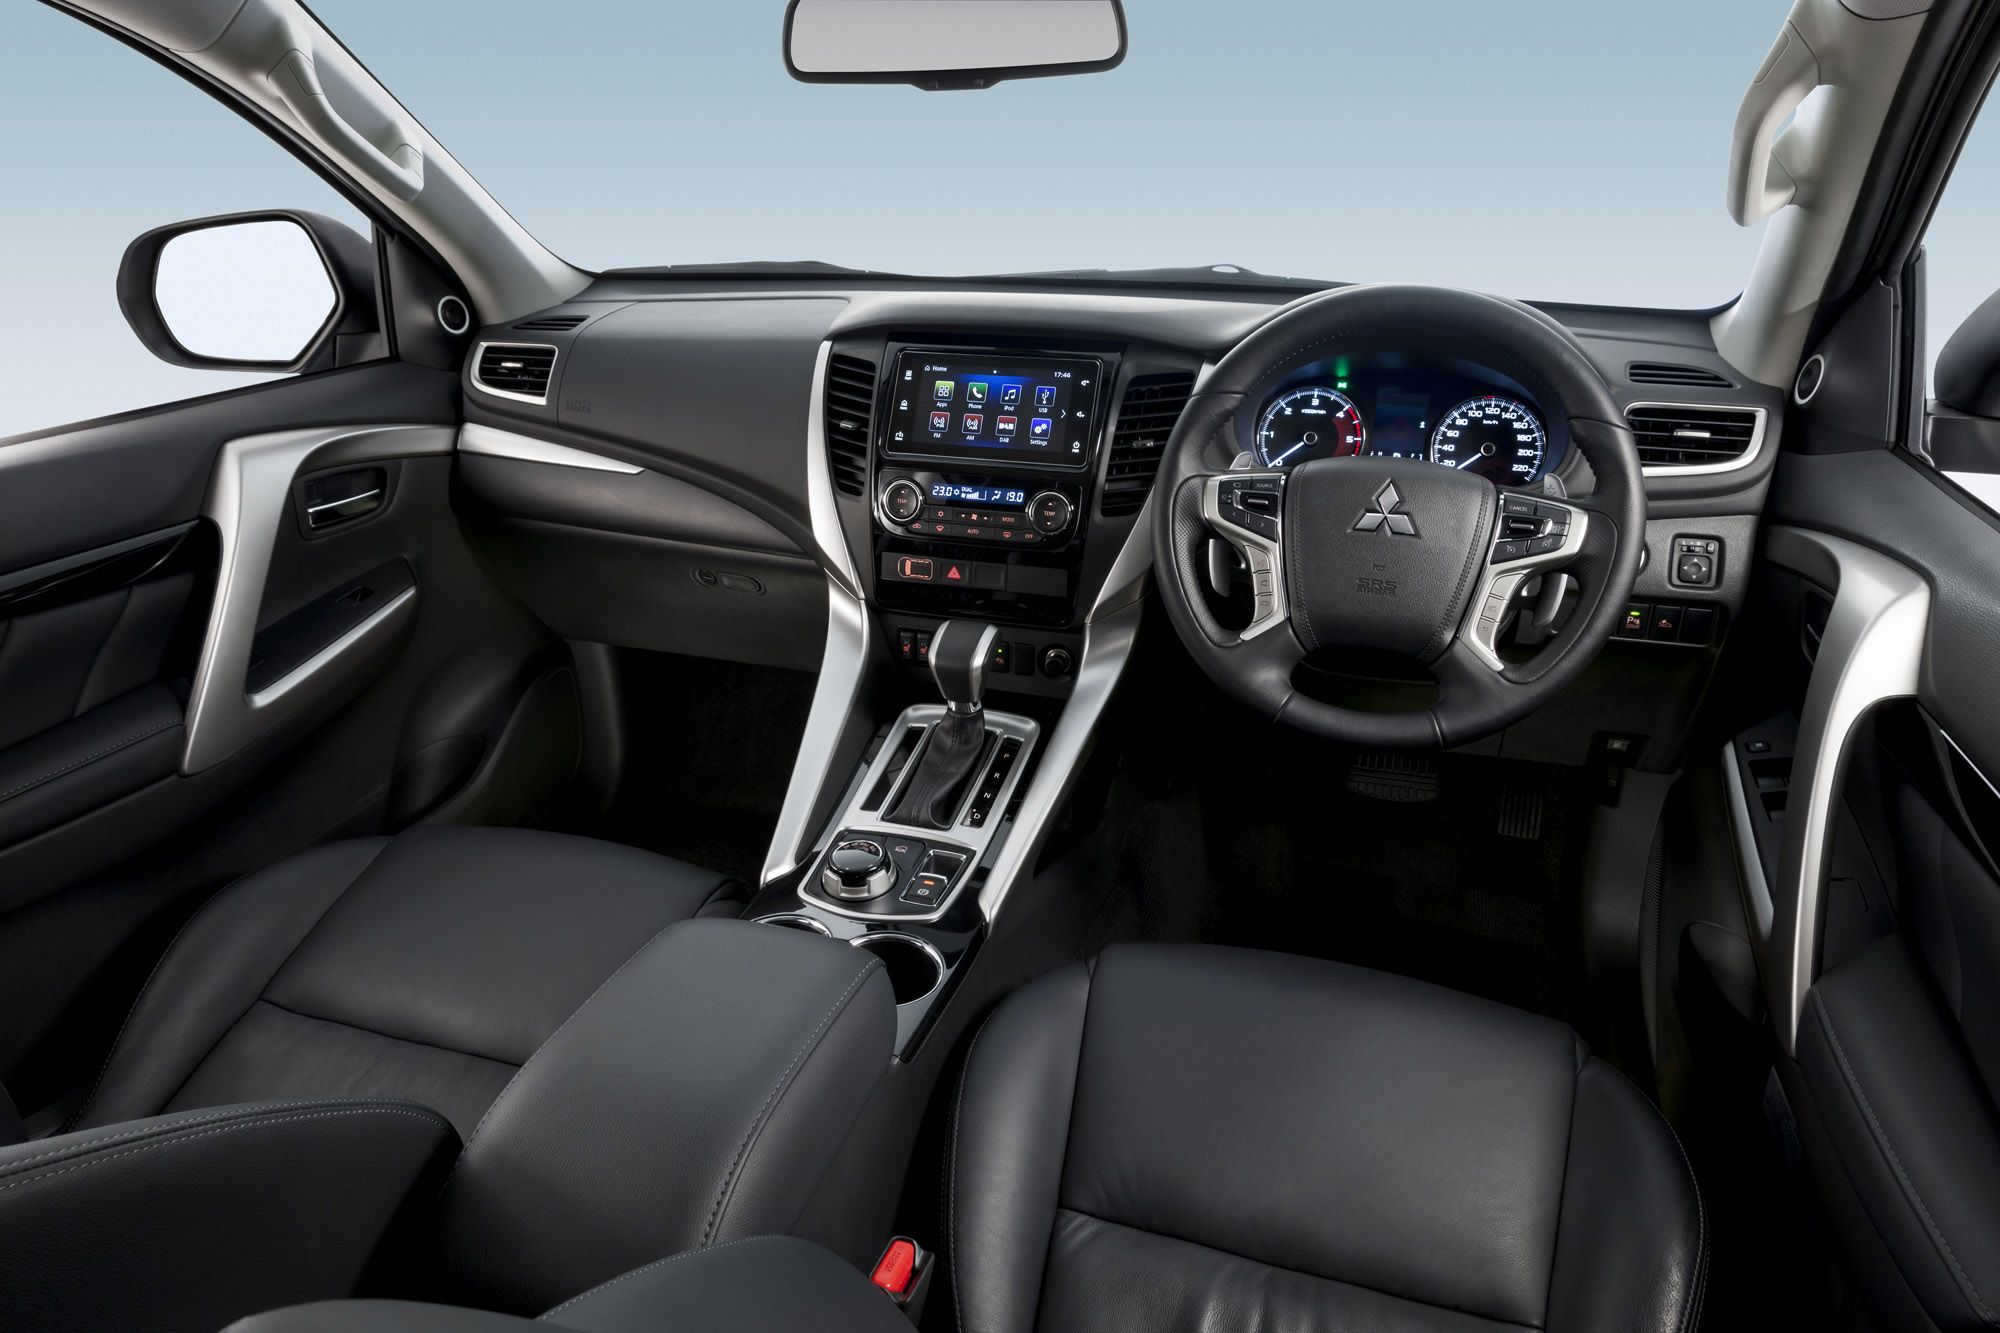 2016 Mitsubishi Pajero Sport Interior Preview (View 23 of 23)